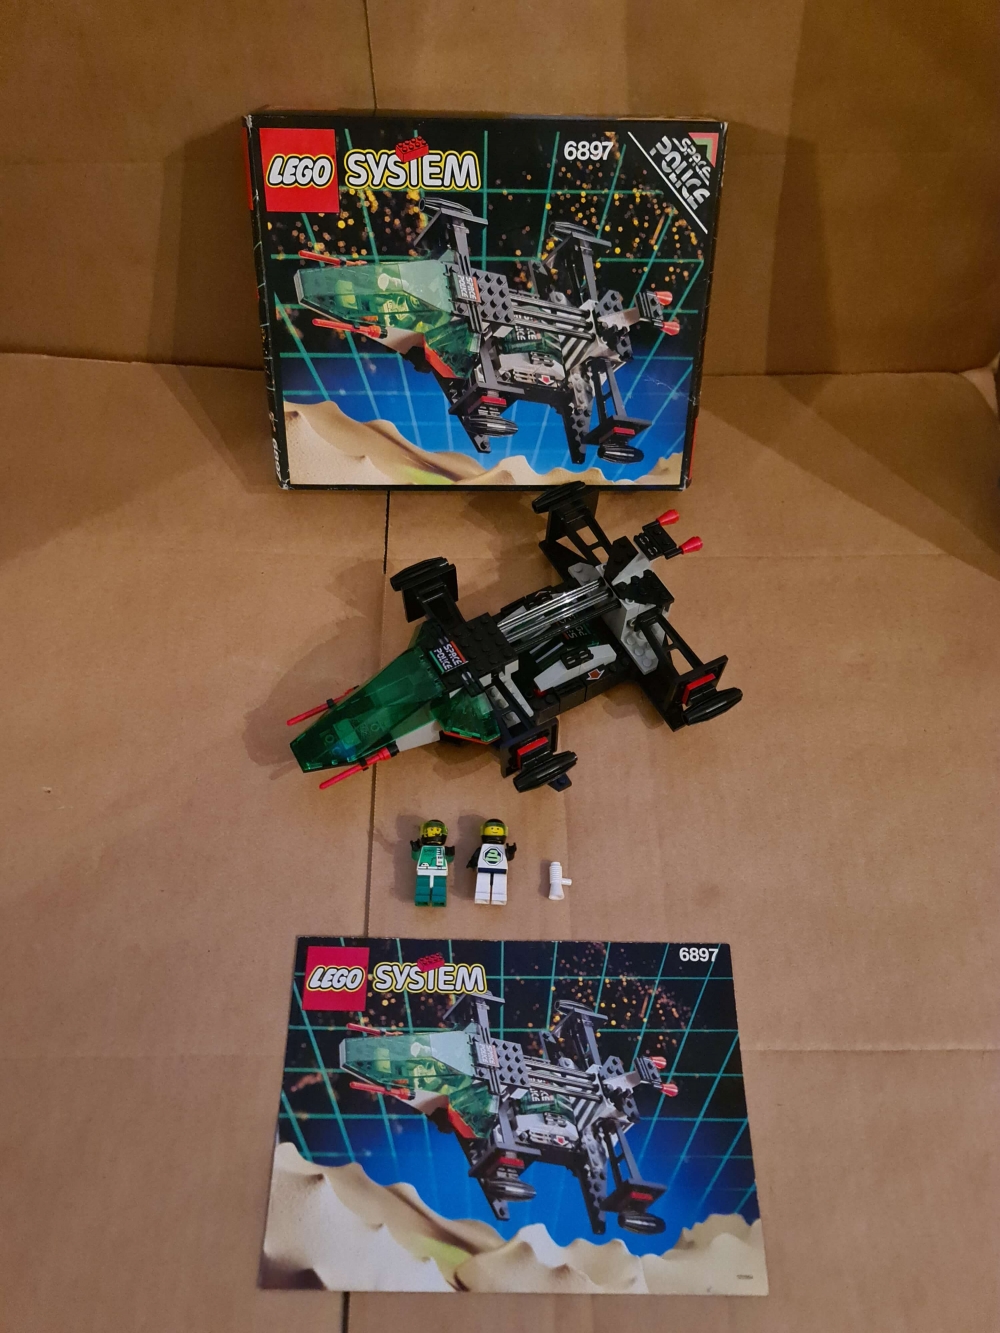 Sett 6897 fra Lego Space : Space Police II serien.
Veldig fint sett.
Komplett med manual og eske.